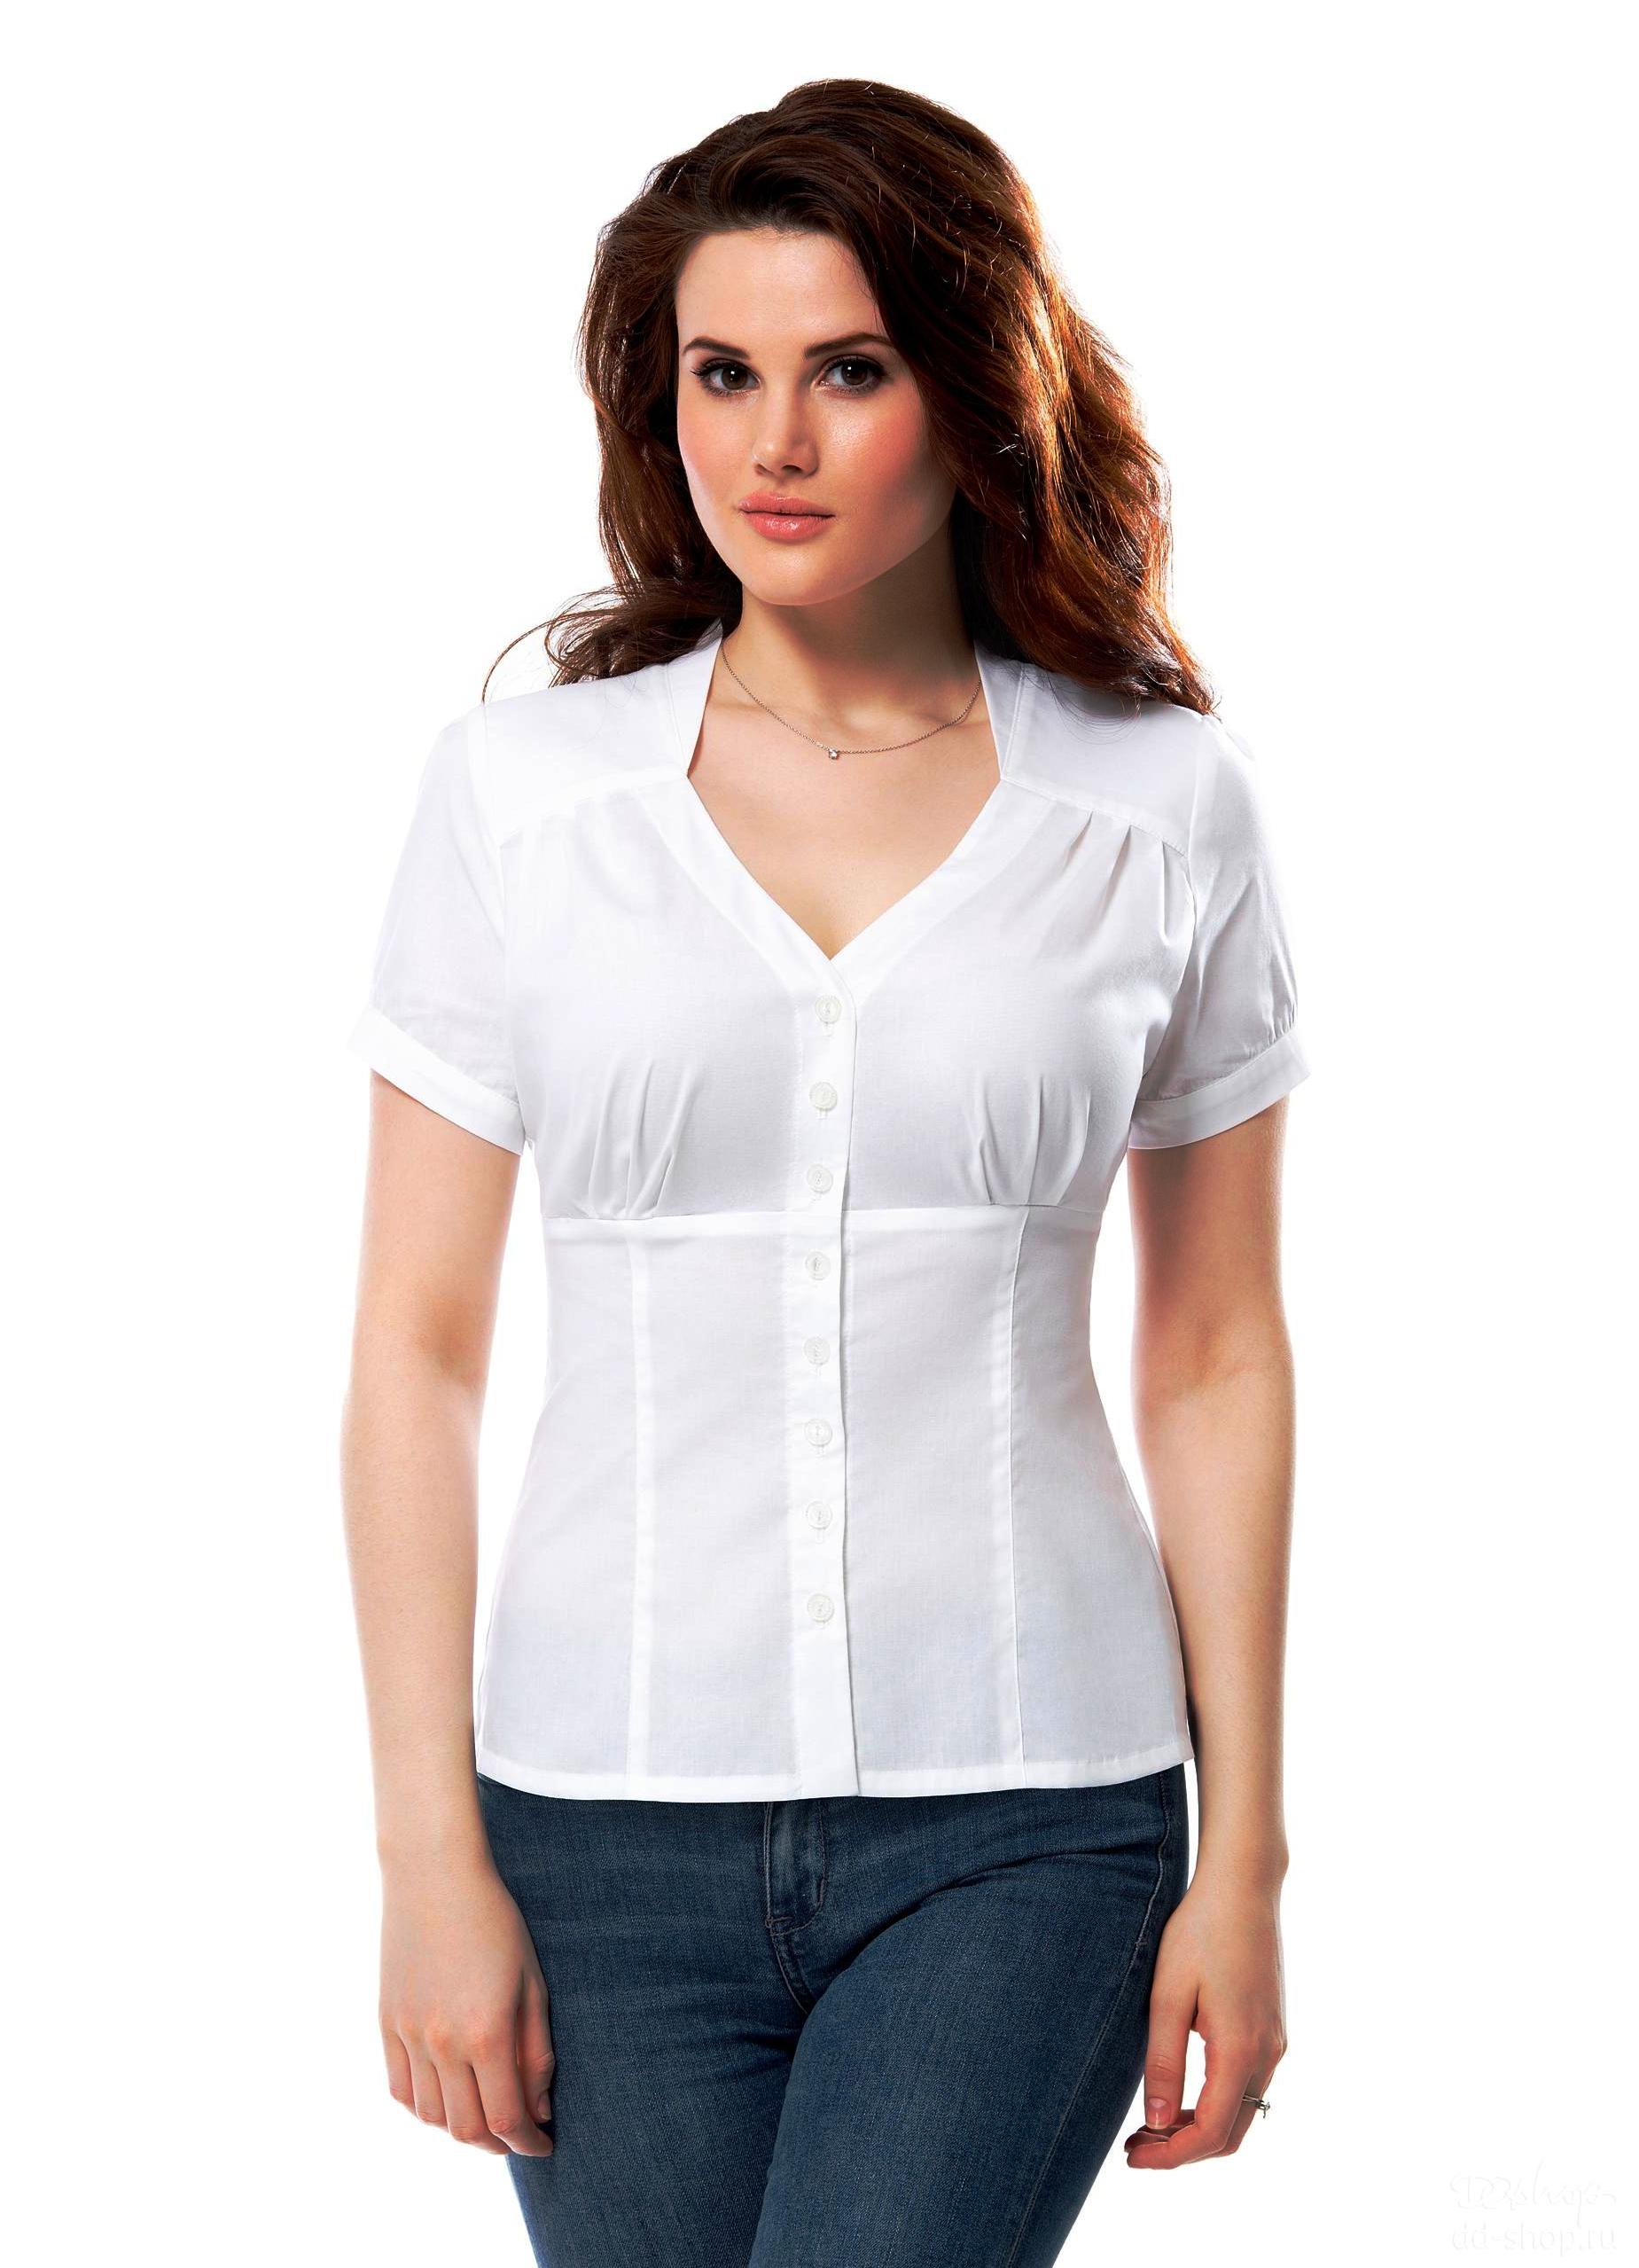 Фасоны летних блузок с коротким рукавом для полных женщин